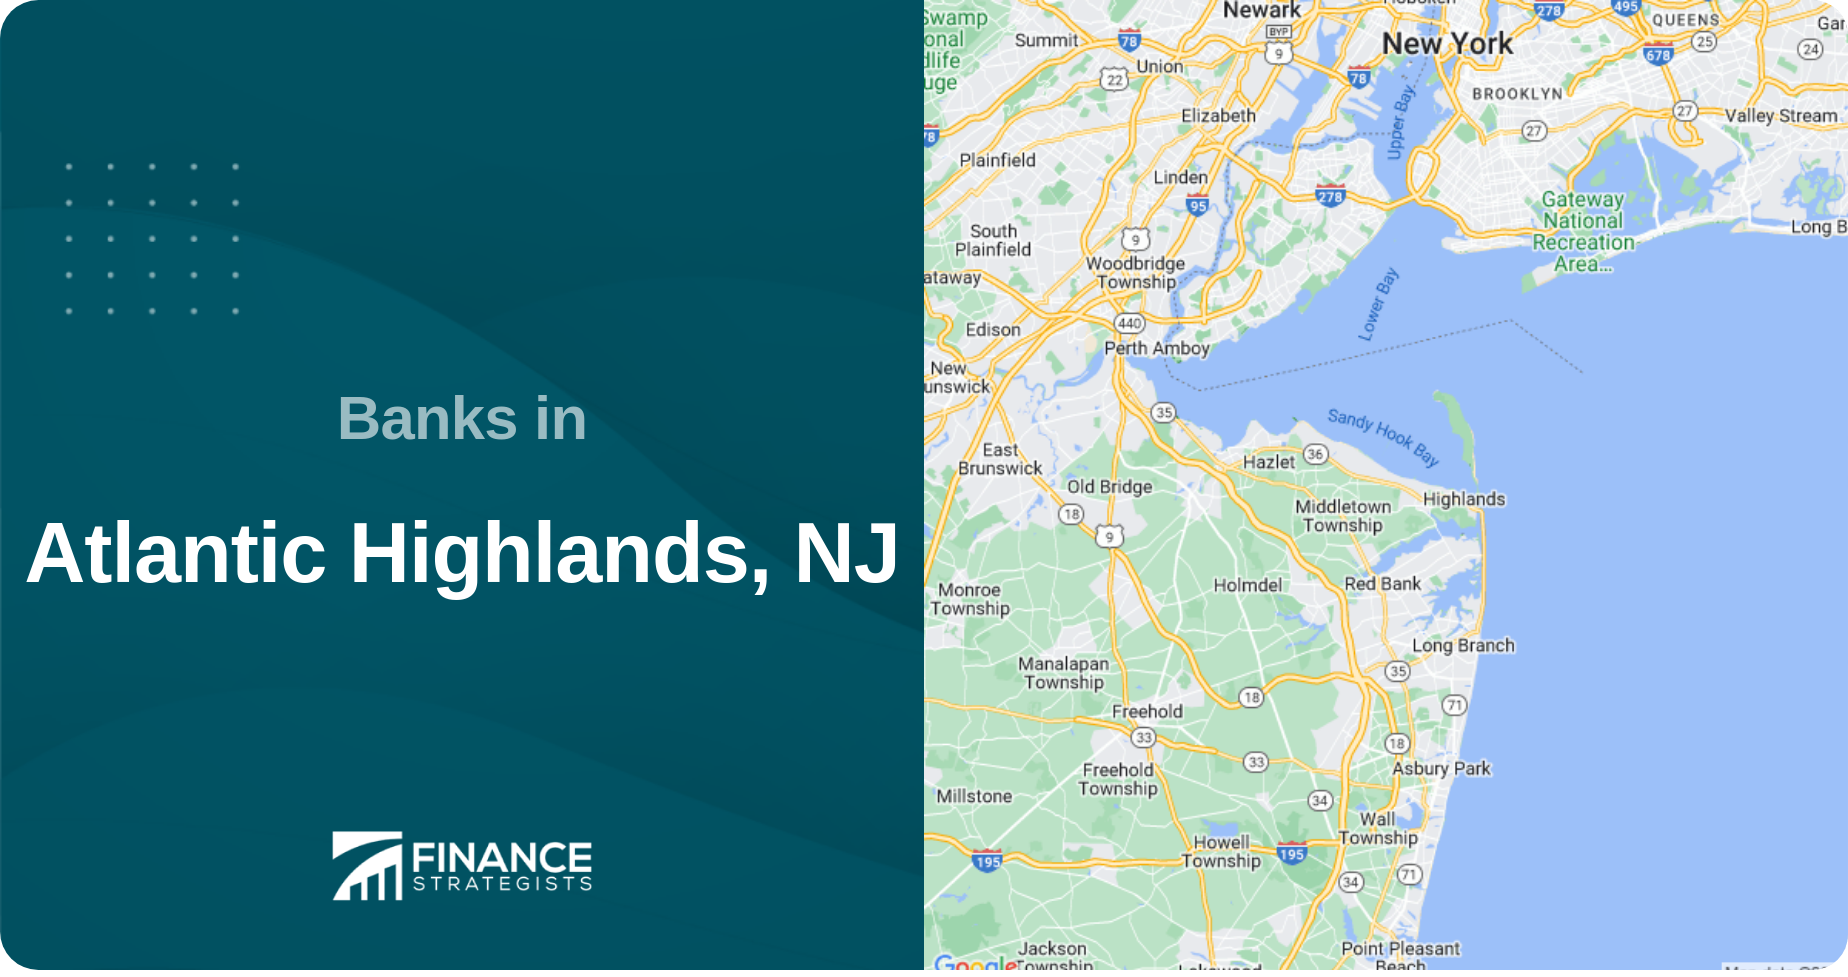 Banks in Atlantic Highlands, NJ